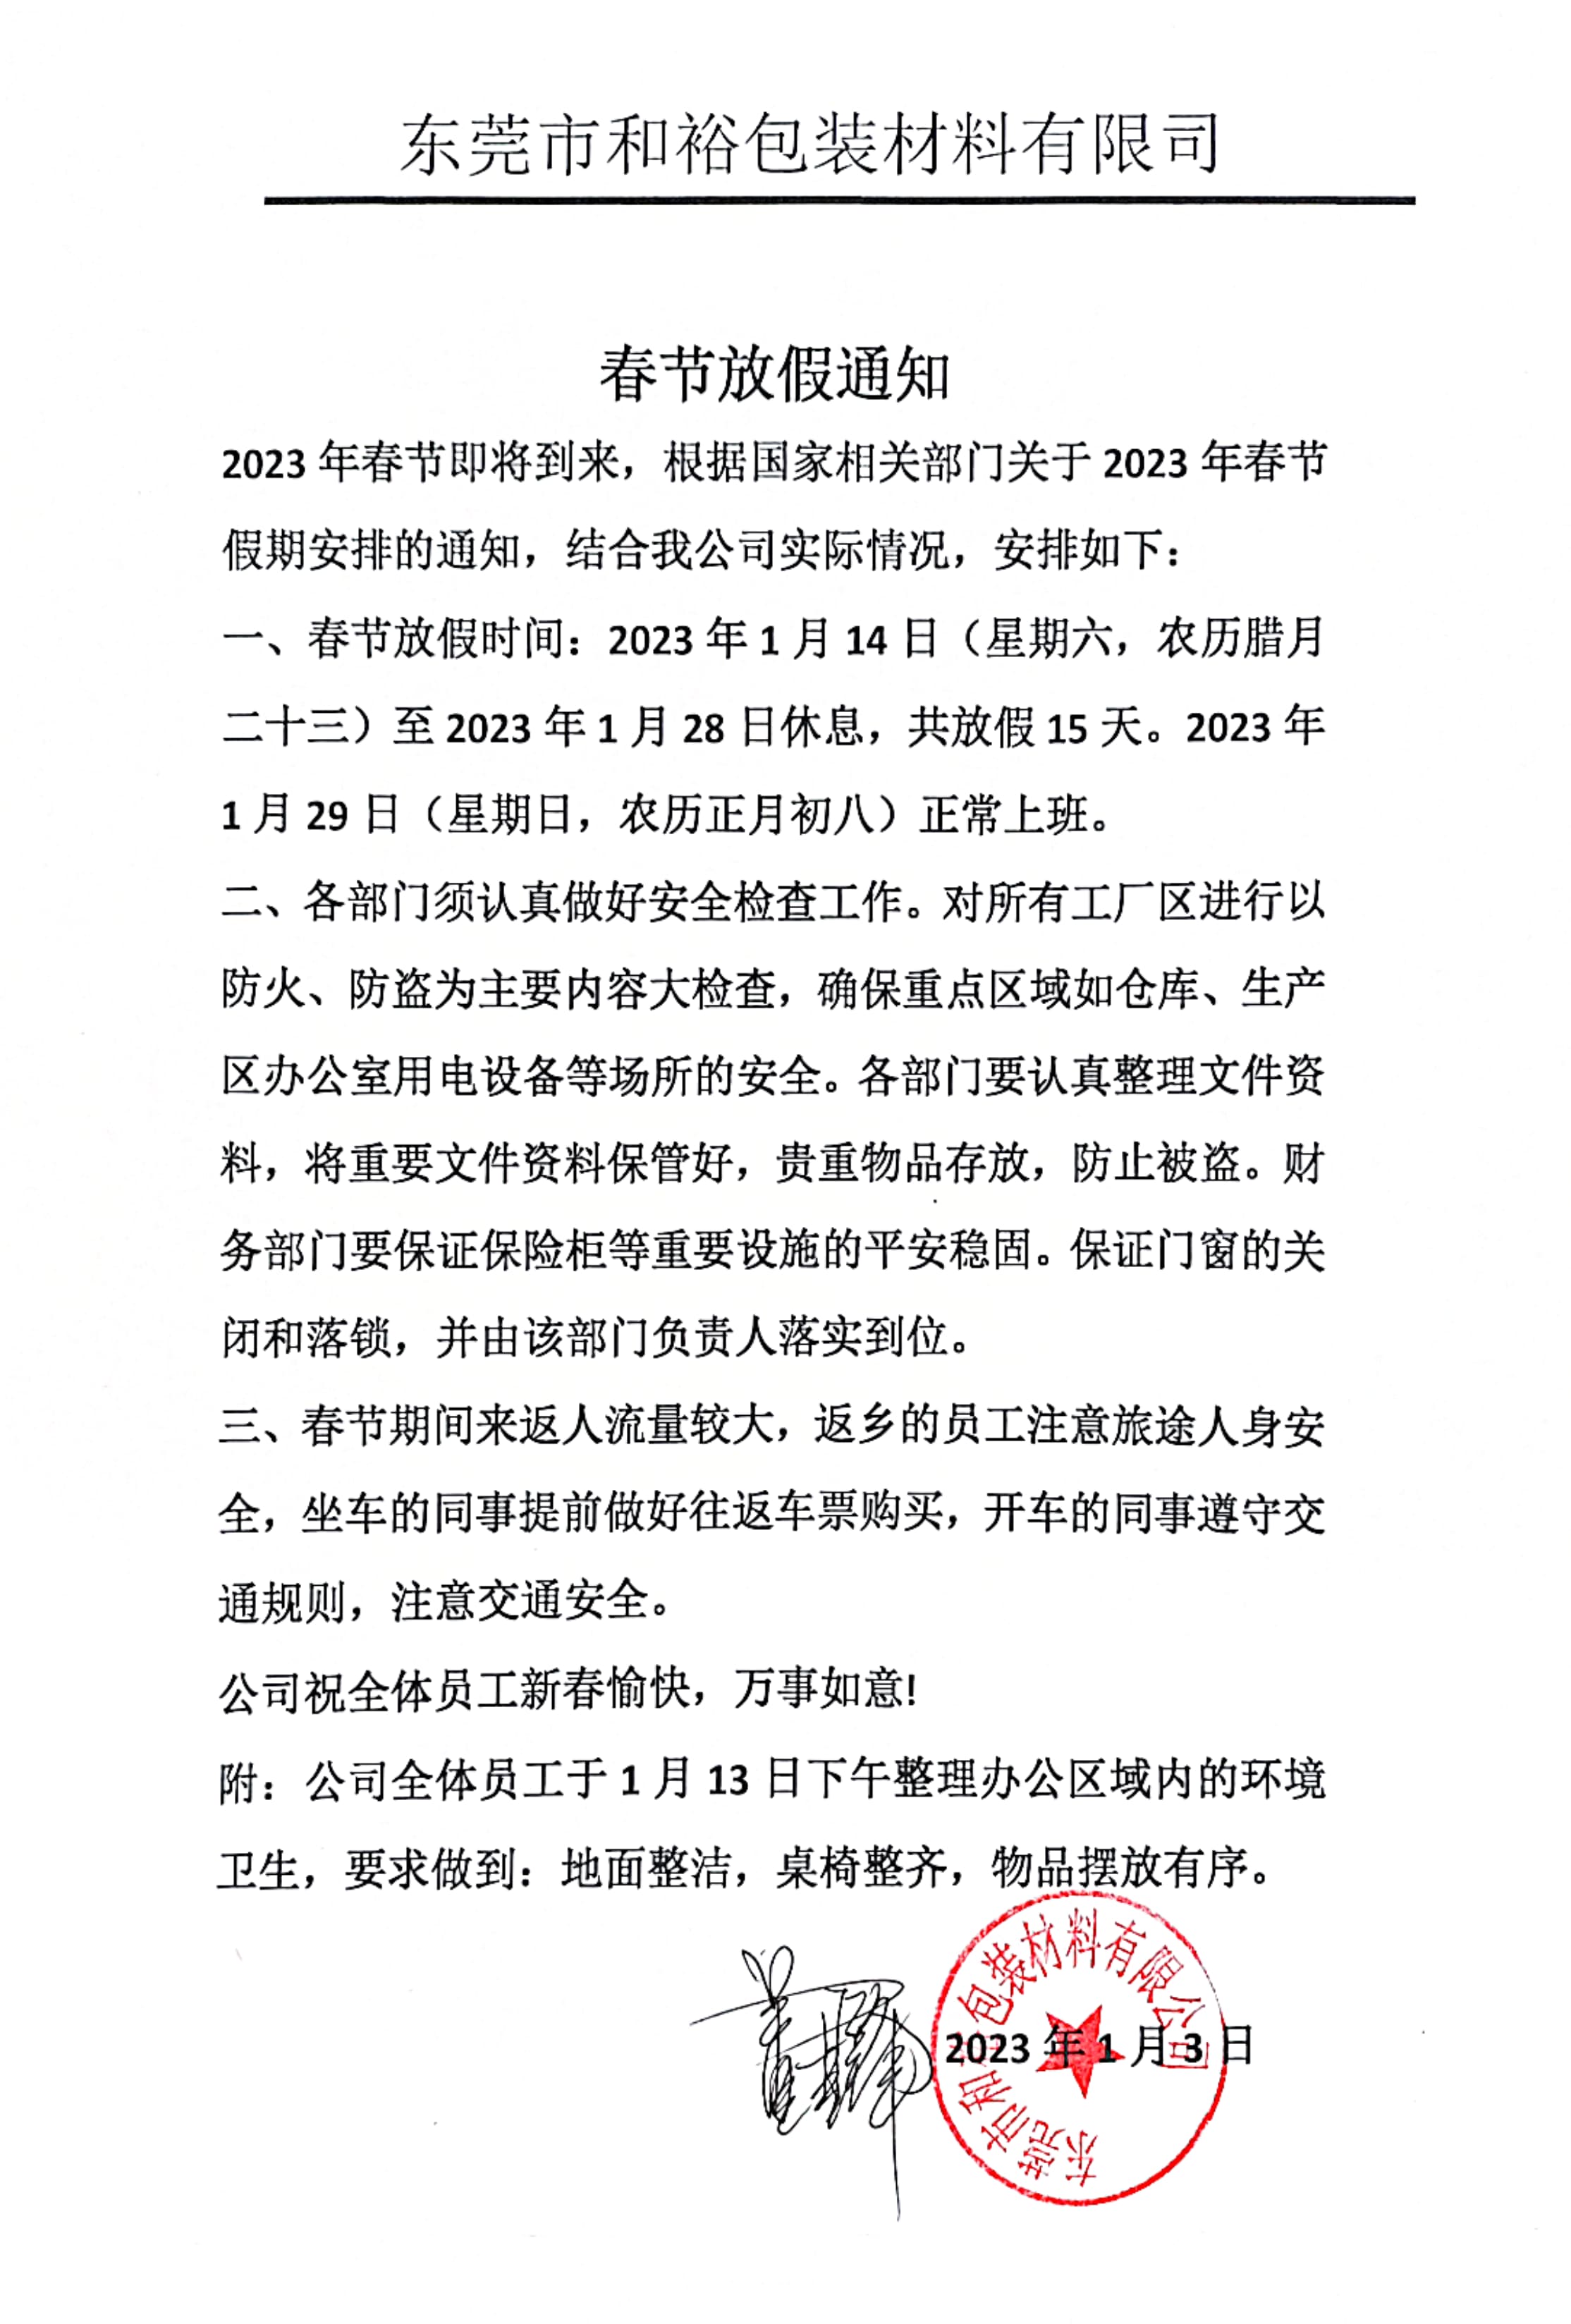 大庆市2023年和裕包装春节放假通知